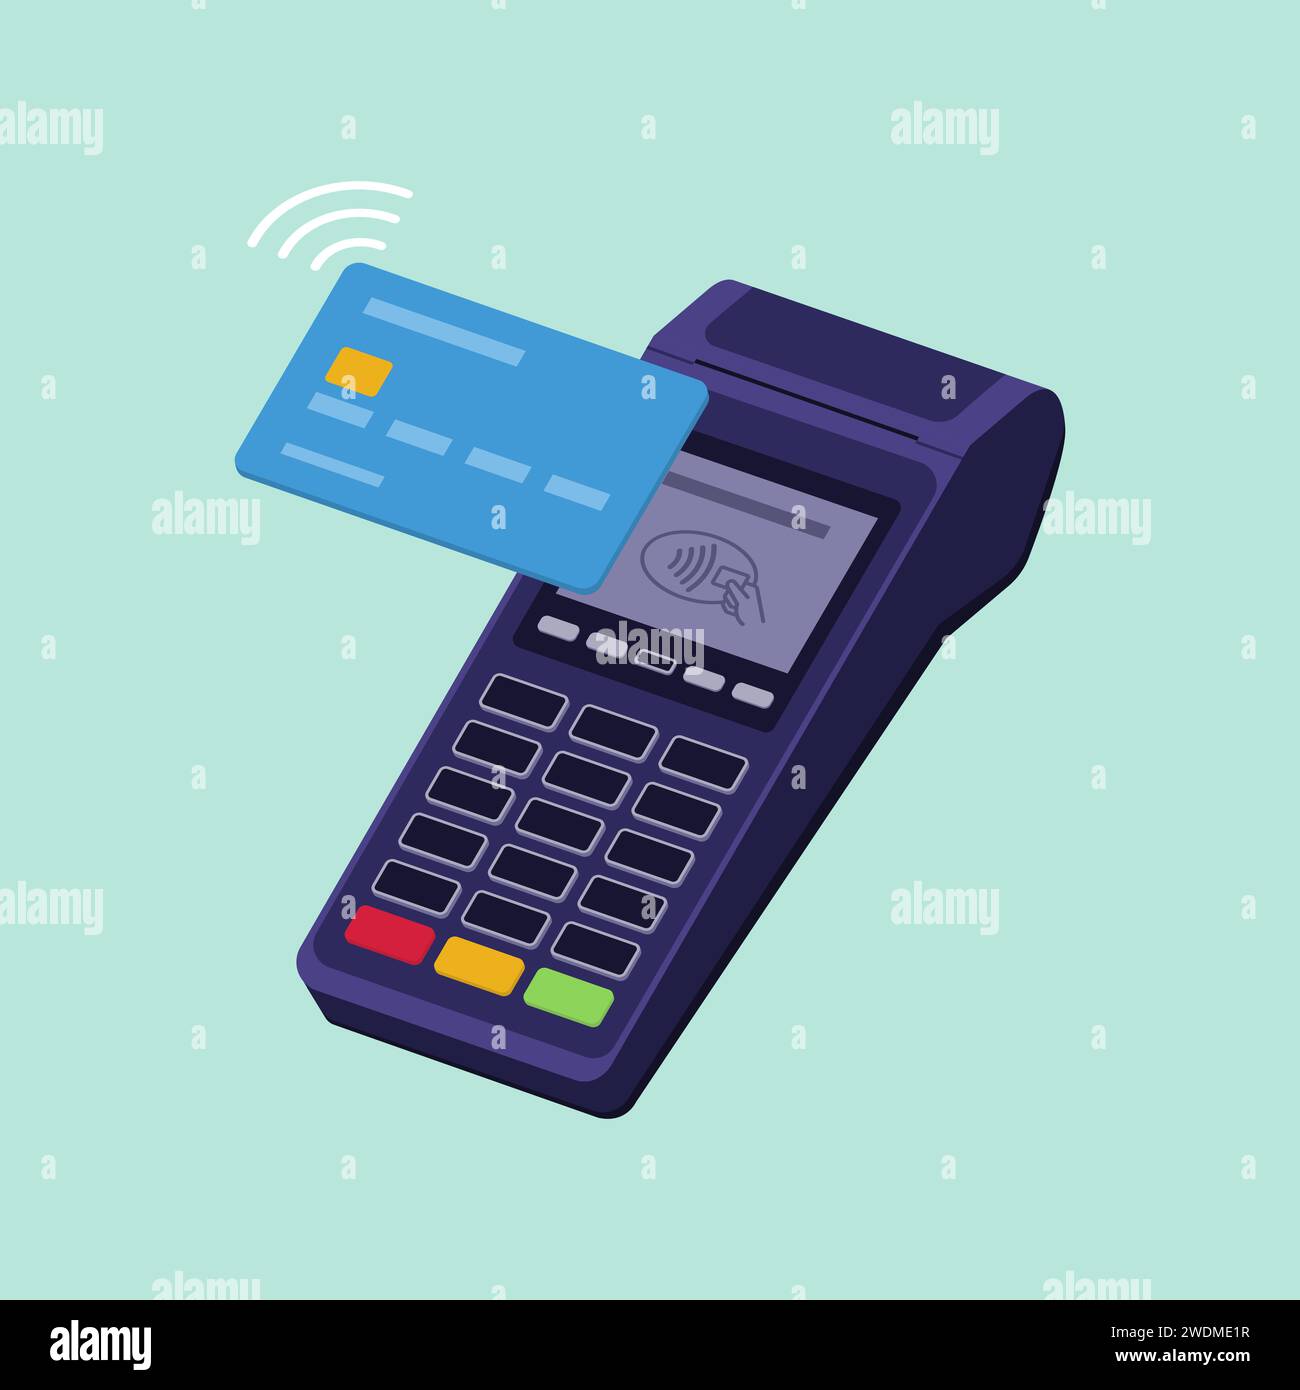 Paiement terminal POS sans contact avec carte de crédit, transactions et concept de paiements Illustration de Vecteur